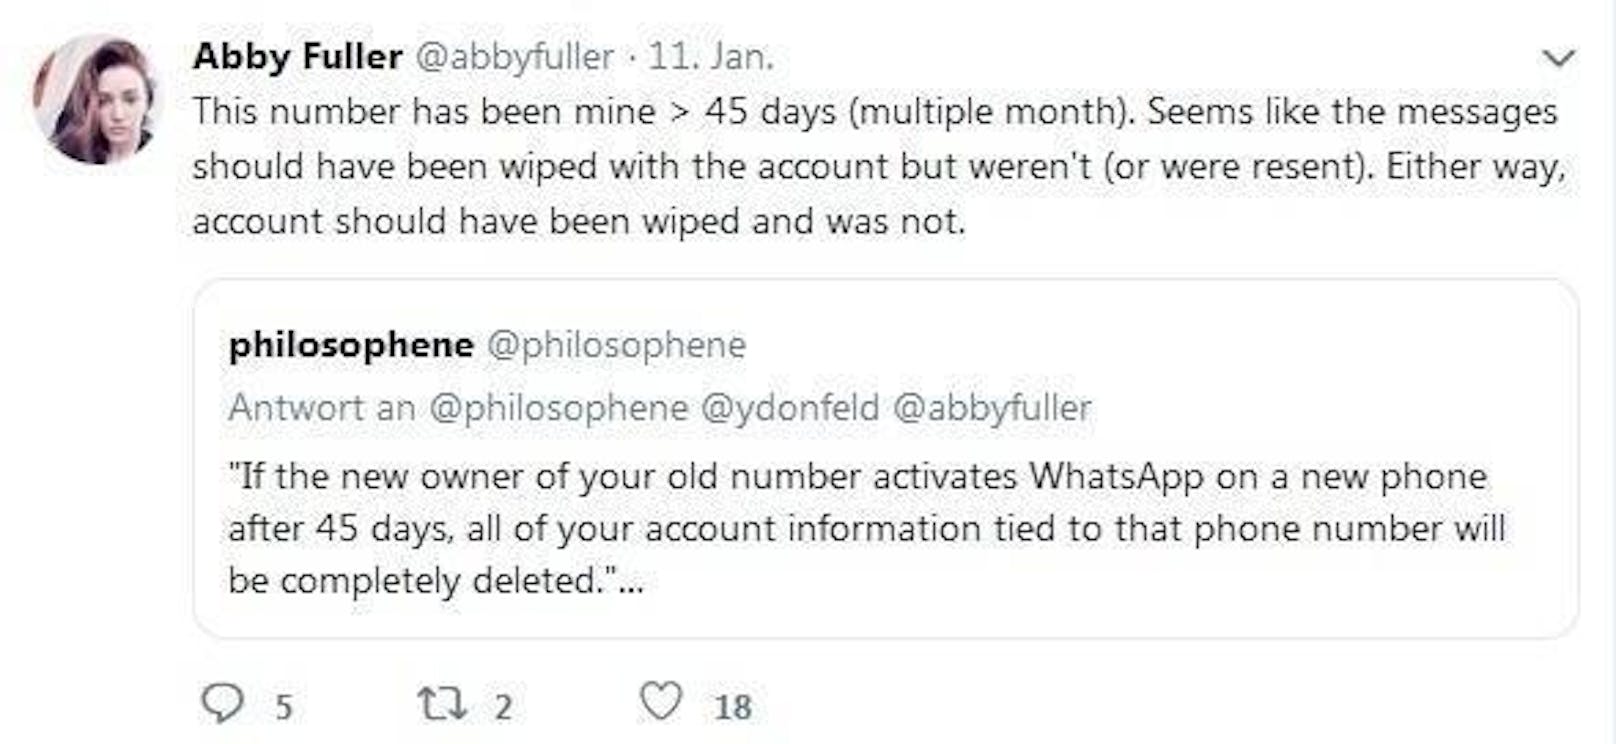 Die Handynummer hatte Fuller bereits über 45 Tage in ihrem Besitz. Und WhatsApp verspricht eigentlich, alle unter einer alten Nummer gespeicherten Daten nach diesem Zeitraum automatisch zu entfernen.